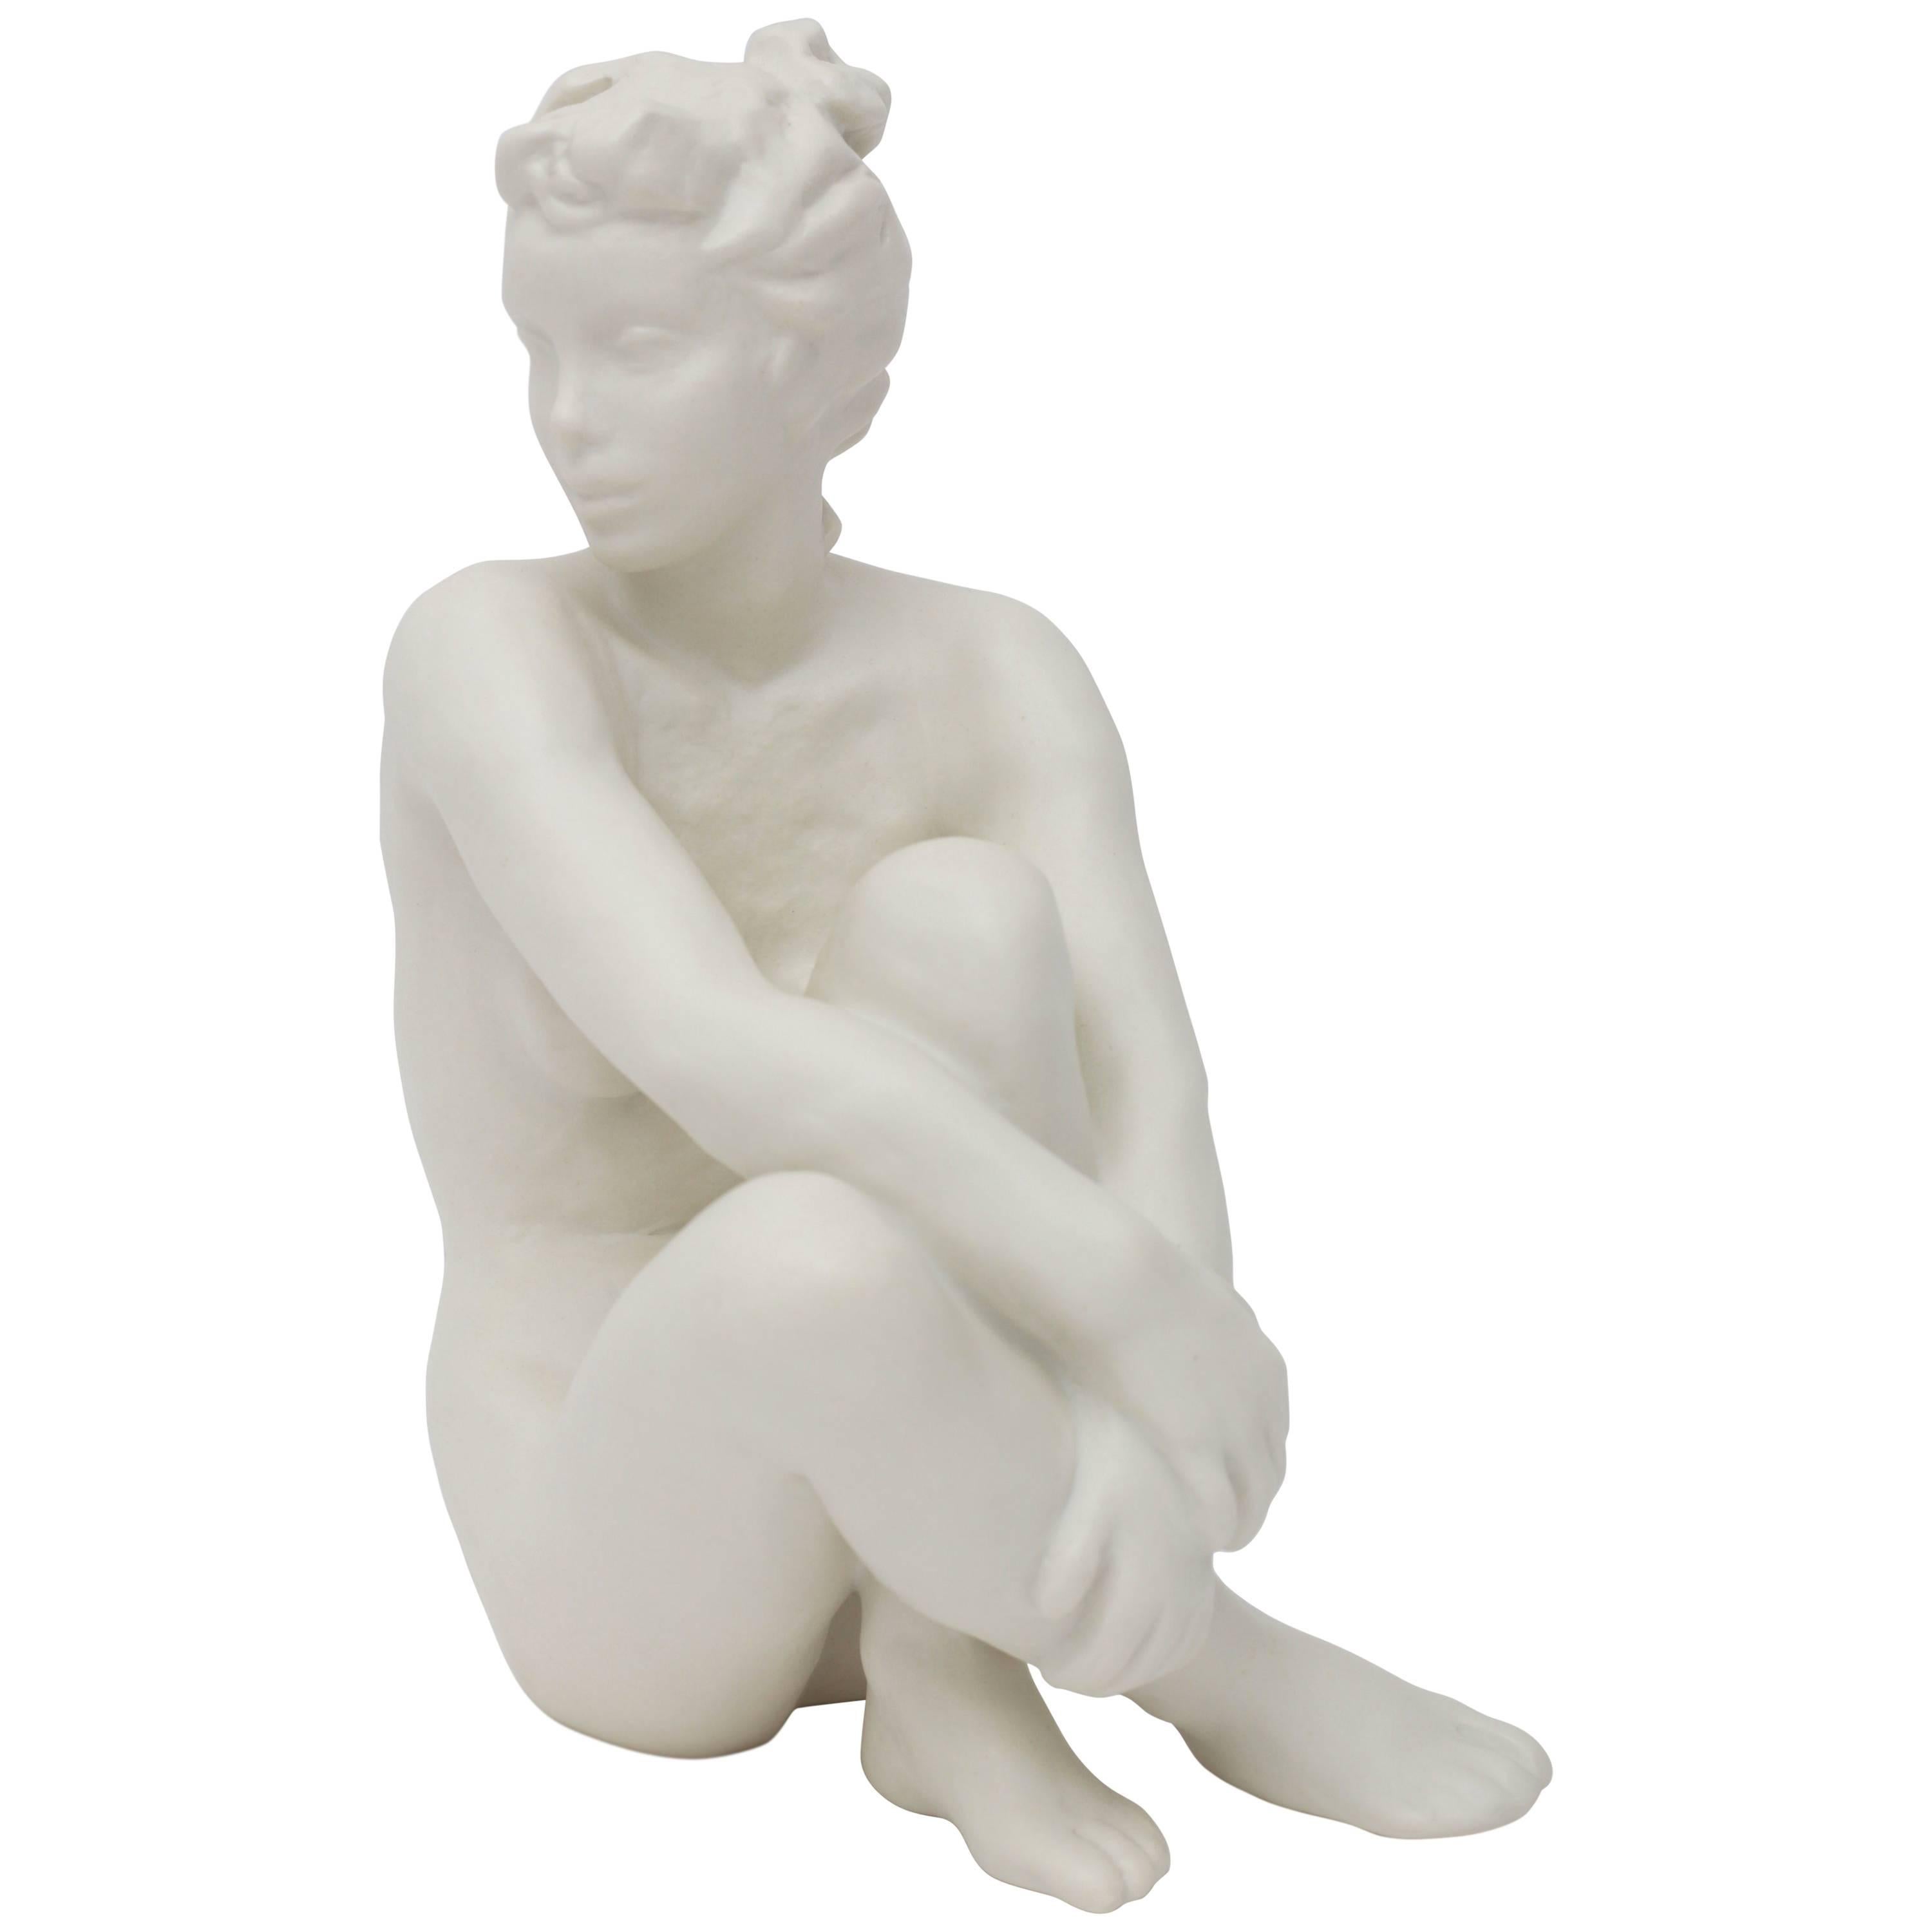  Figurine Sculpture of a Nude Female 